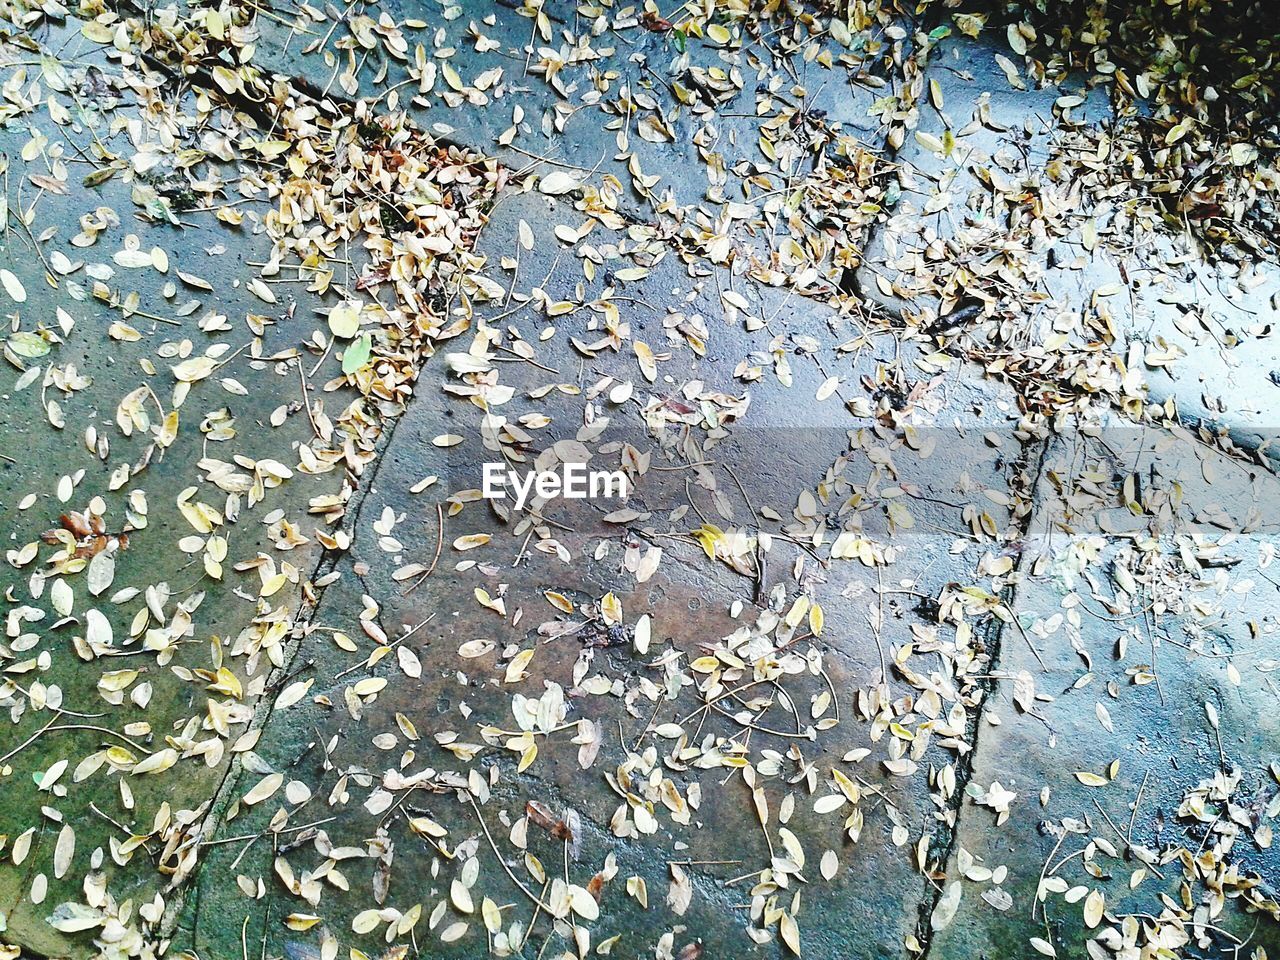 Fallen leaves on sidewalk